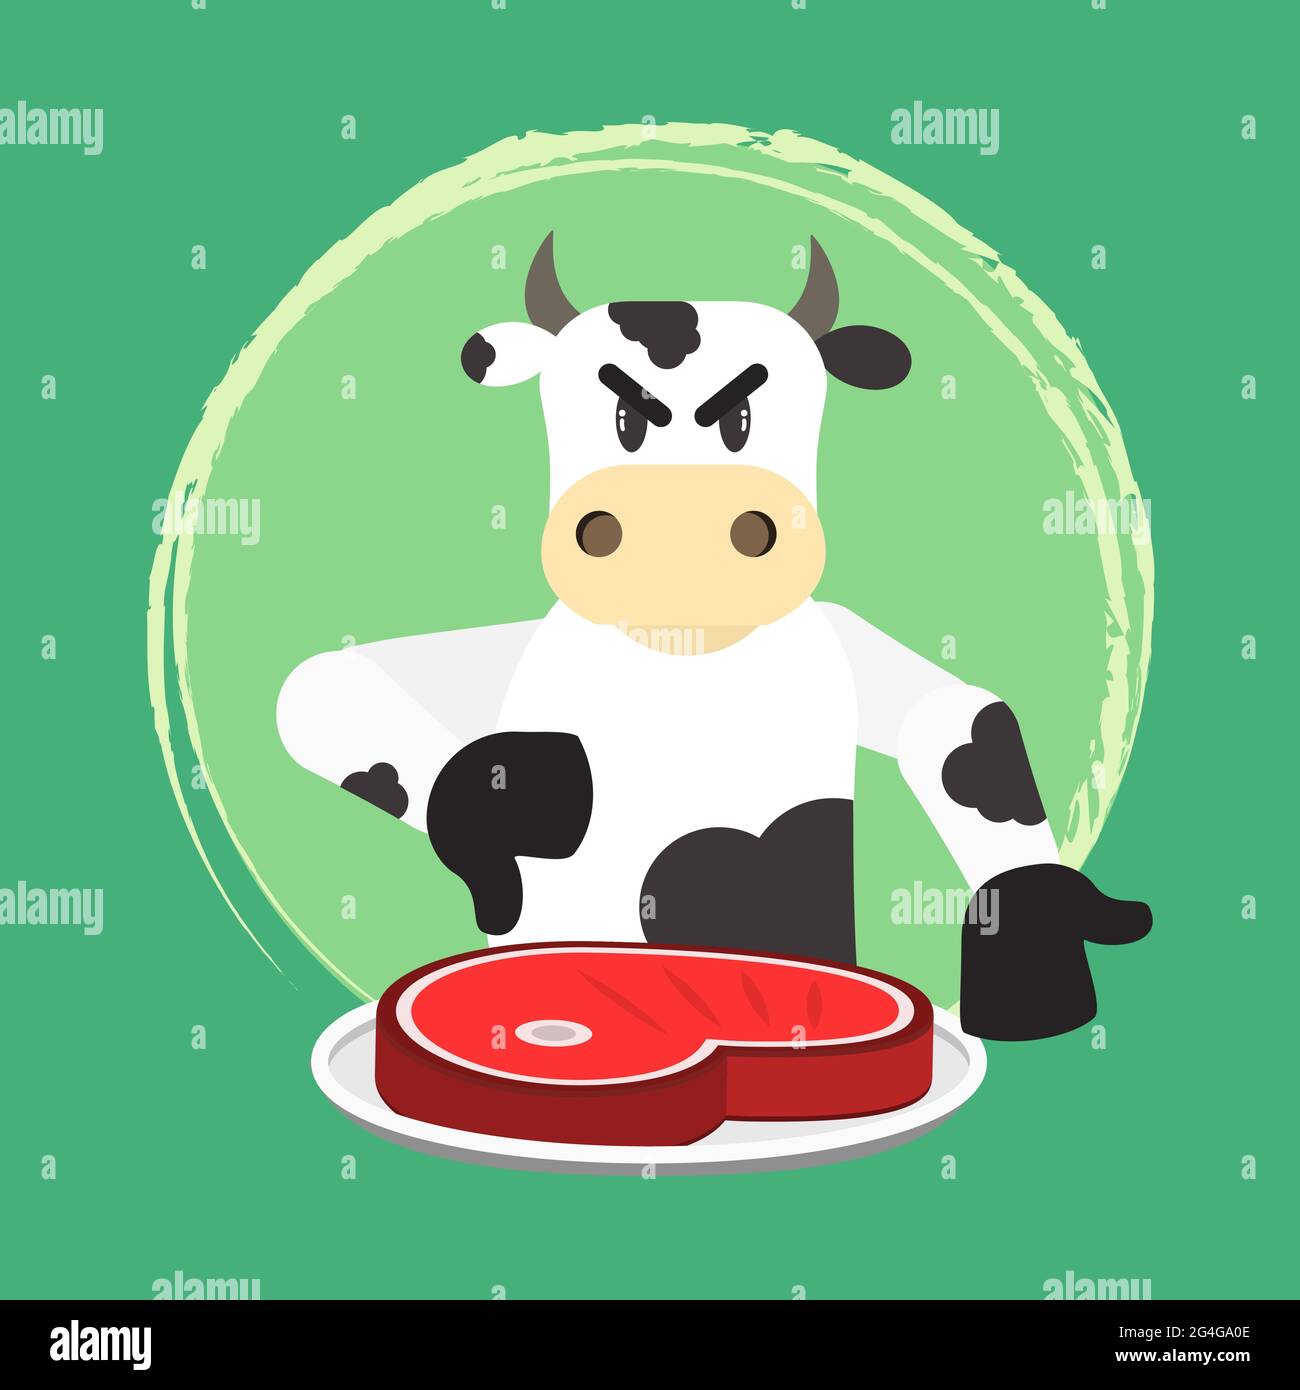 Wütend Rinder missbilligen Fleischkonsum. Einladung zum Veganismus und Vegetarismus. Kein Rindfleisch. Stock Vektor